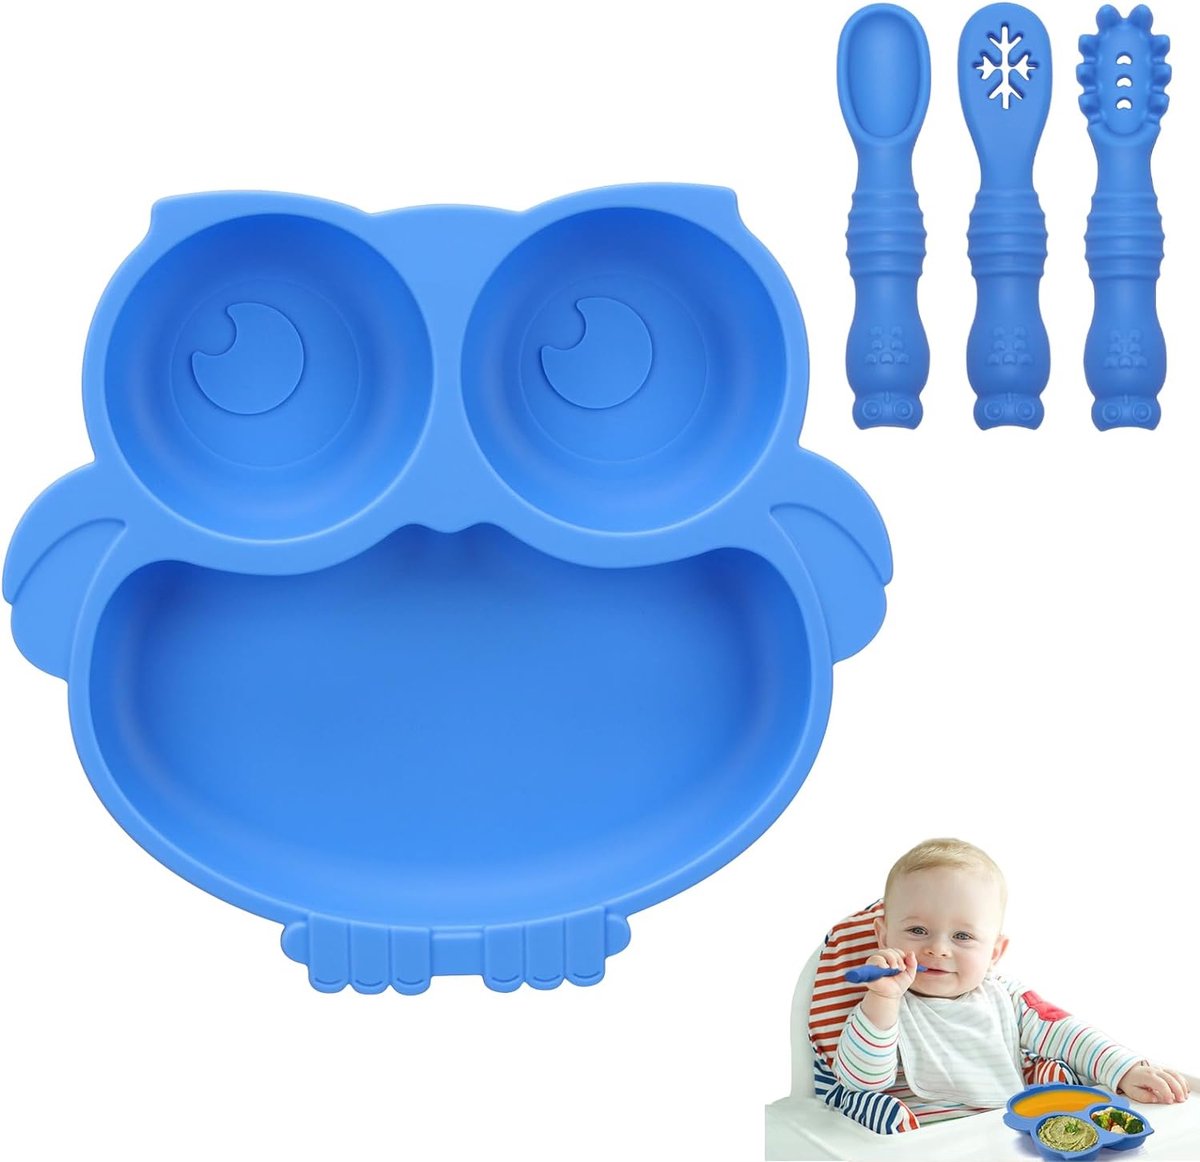 Uil Siliconen Zuigbord voor Baby, Peuter Bestek met 3 Lepel Vork Anti-Slip Afwenborden Voedingsgescheiden Borden Set voor Kinderstoel Dienblad (Blauw)